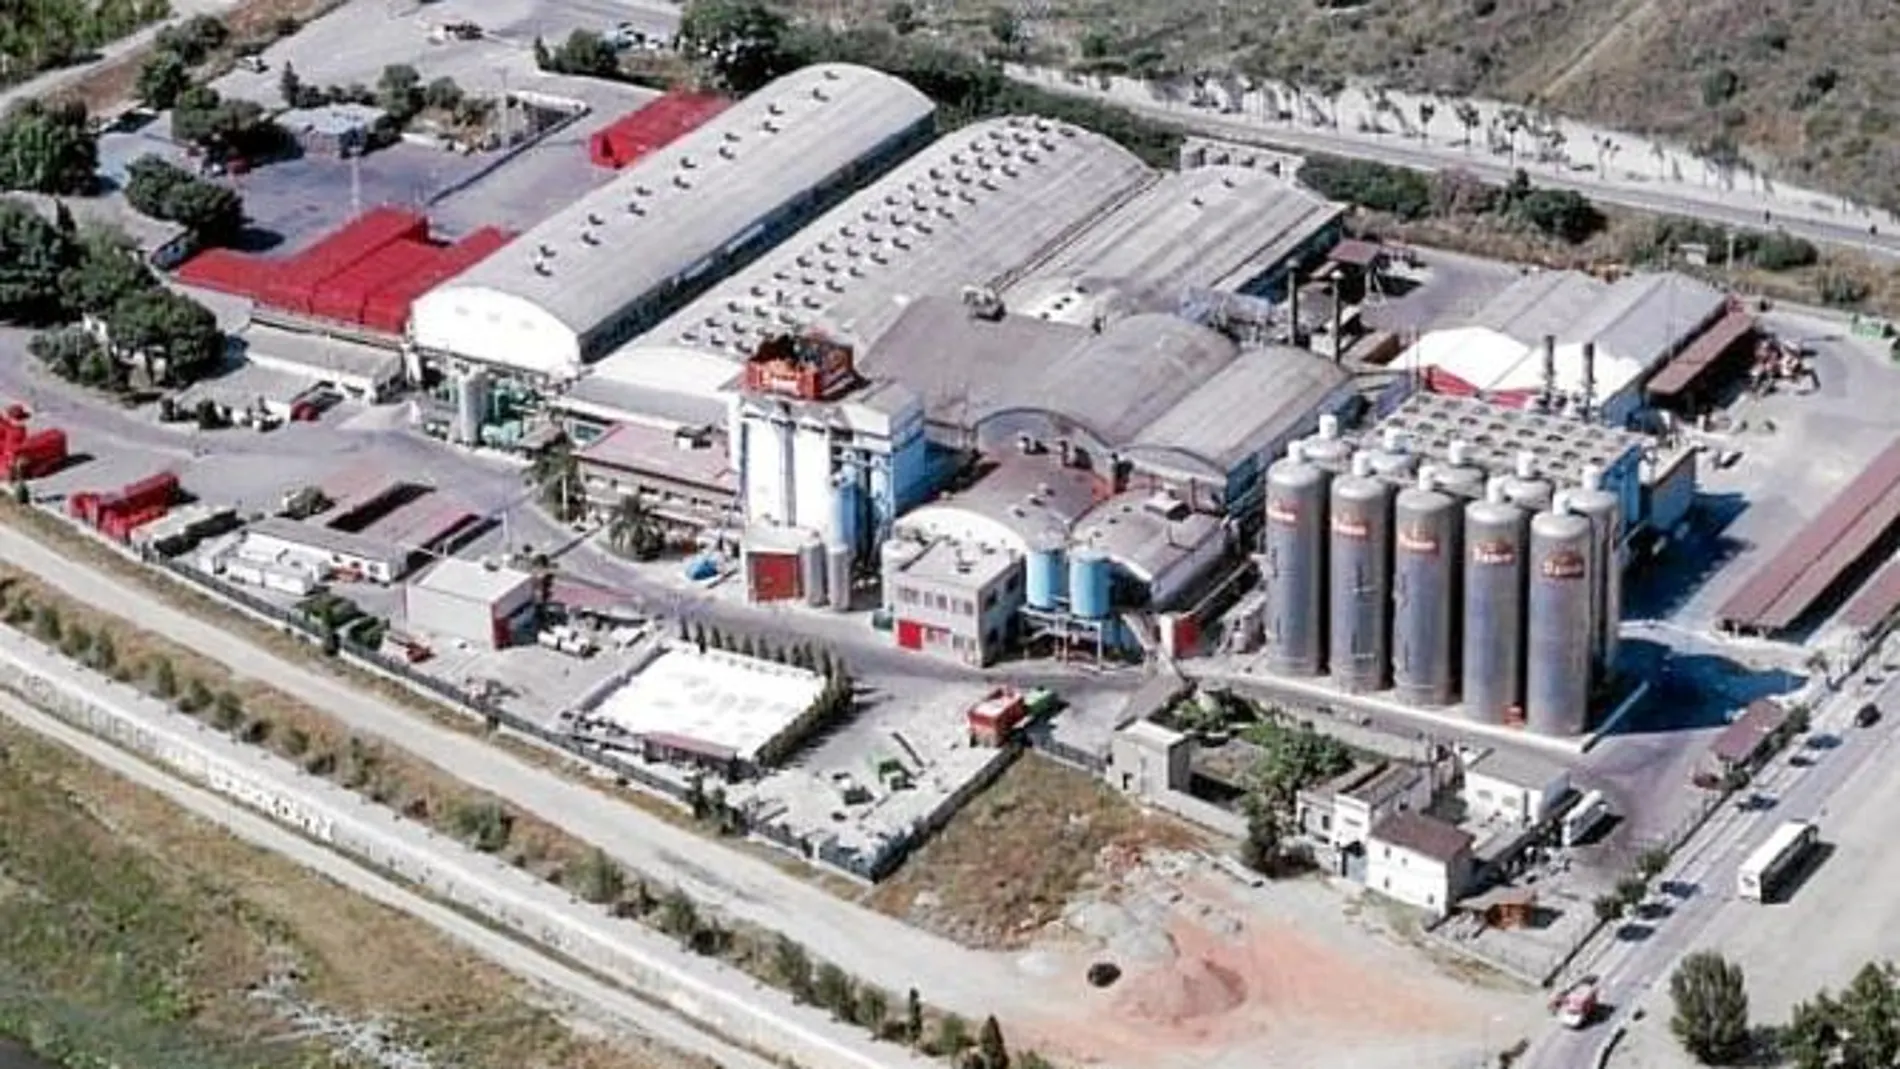 La planta de Santa Coloma de Gramenet en la que se ubicará la fábrica de Cacaolat ocupa 52.000 metros cuadrados